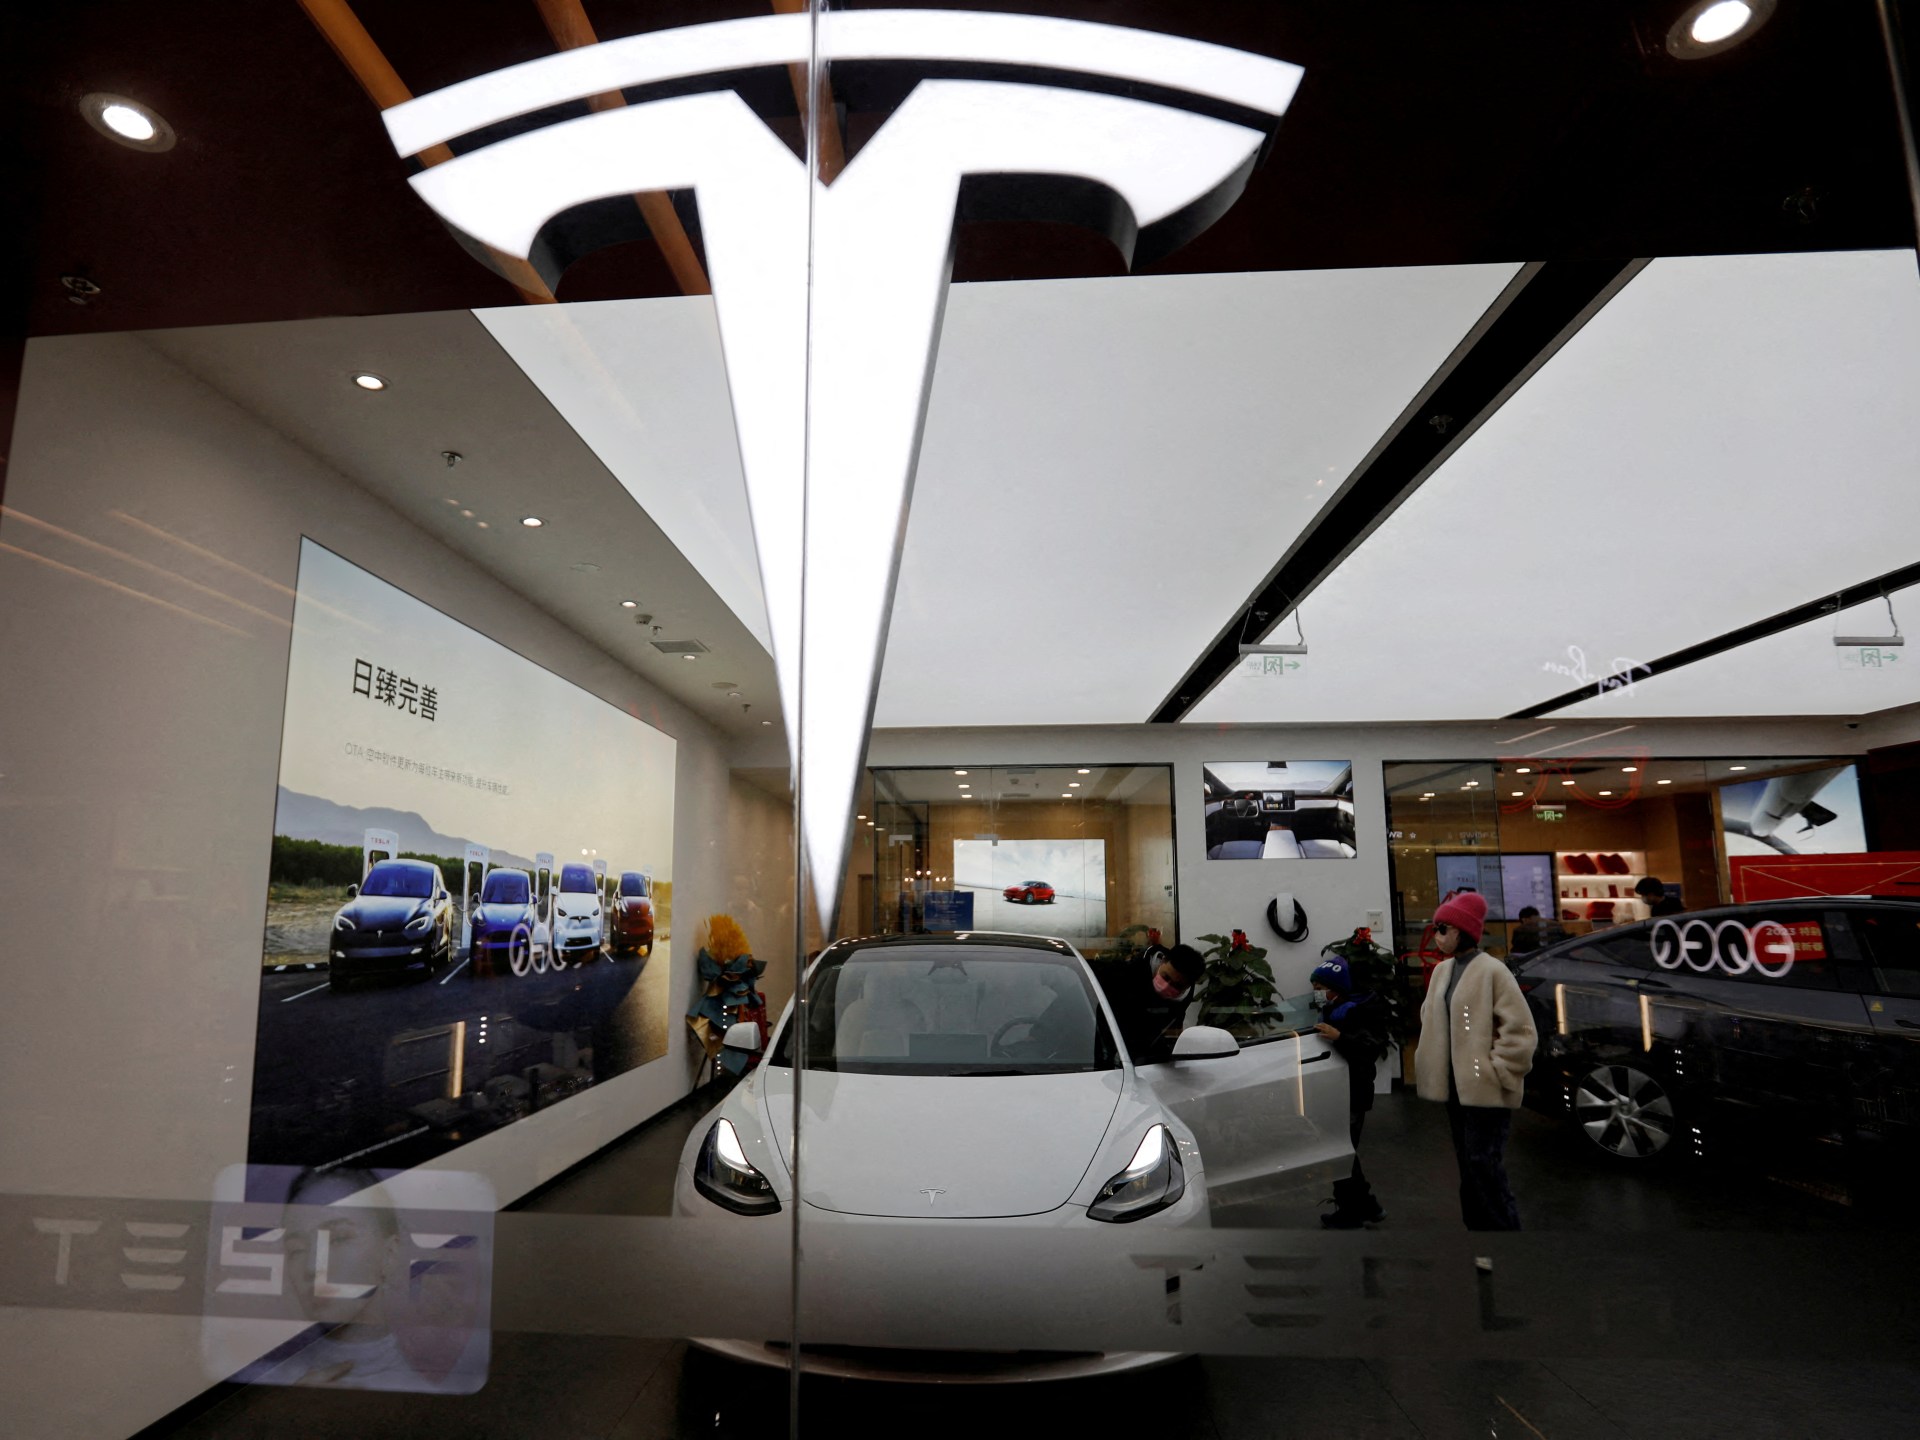 Tesla Menandakan Biaya Lebih Rendah, Tapi Musk Tidak Mengungkapkan Mobil Lebih Murah |  Industri otomotif